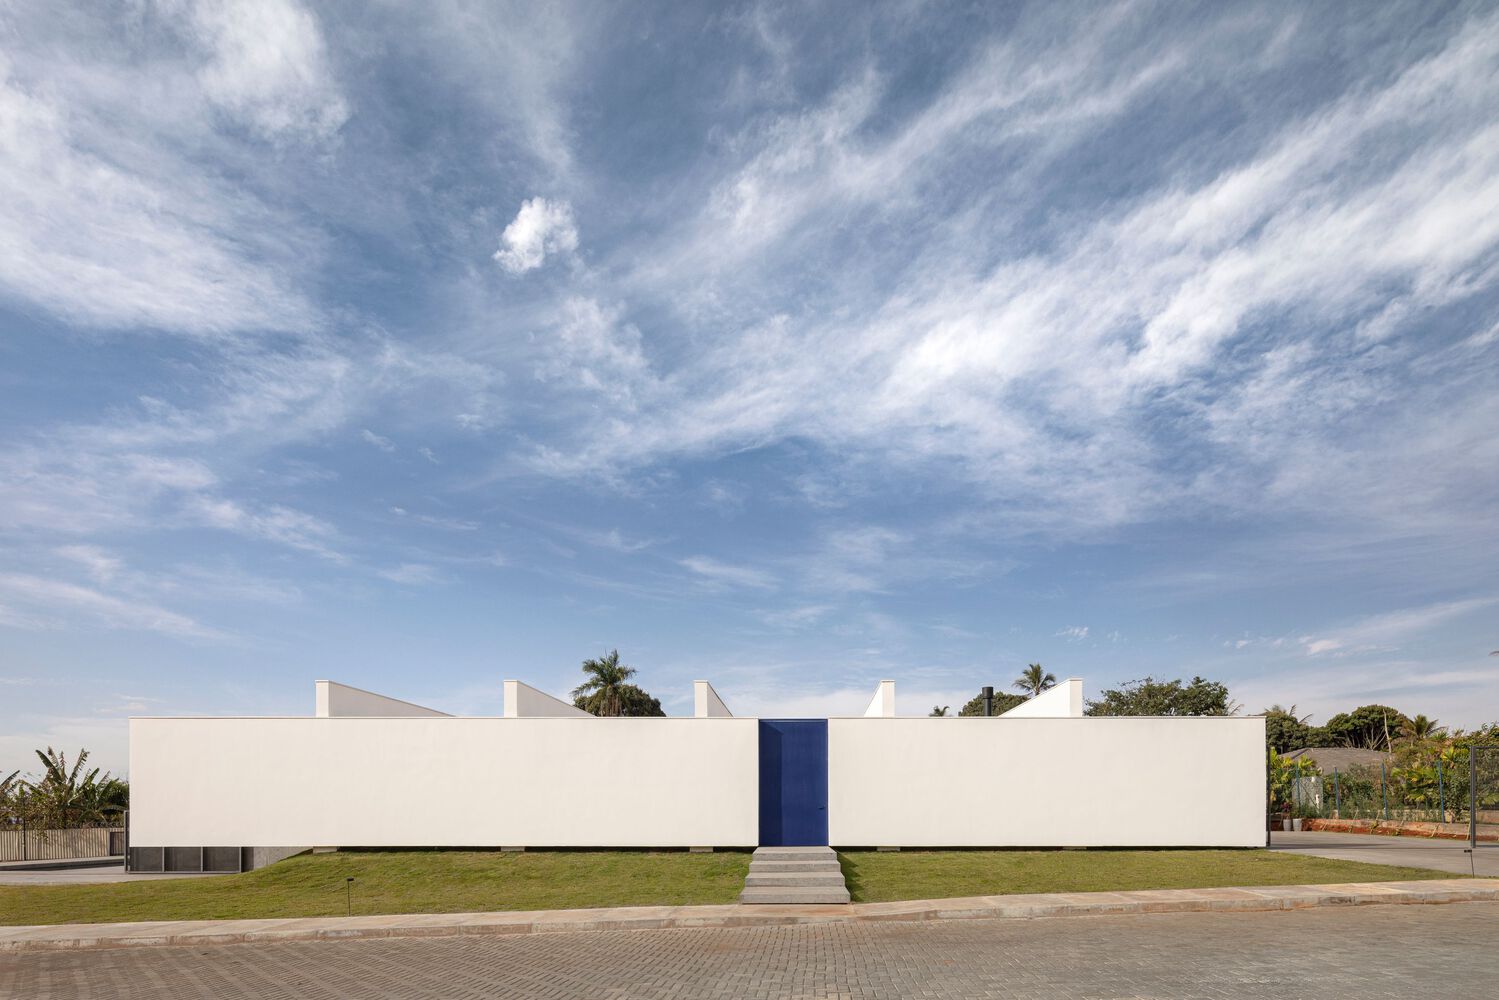 别墅设计,住宅设计案例,BLOCO Arquitetos,巴西,国外别墅设计案例,600㎡,景观别墅,画廊住宅